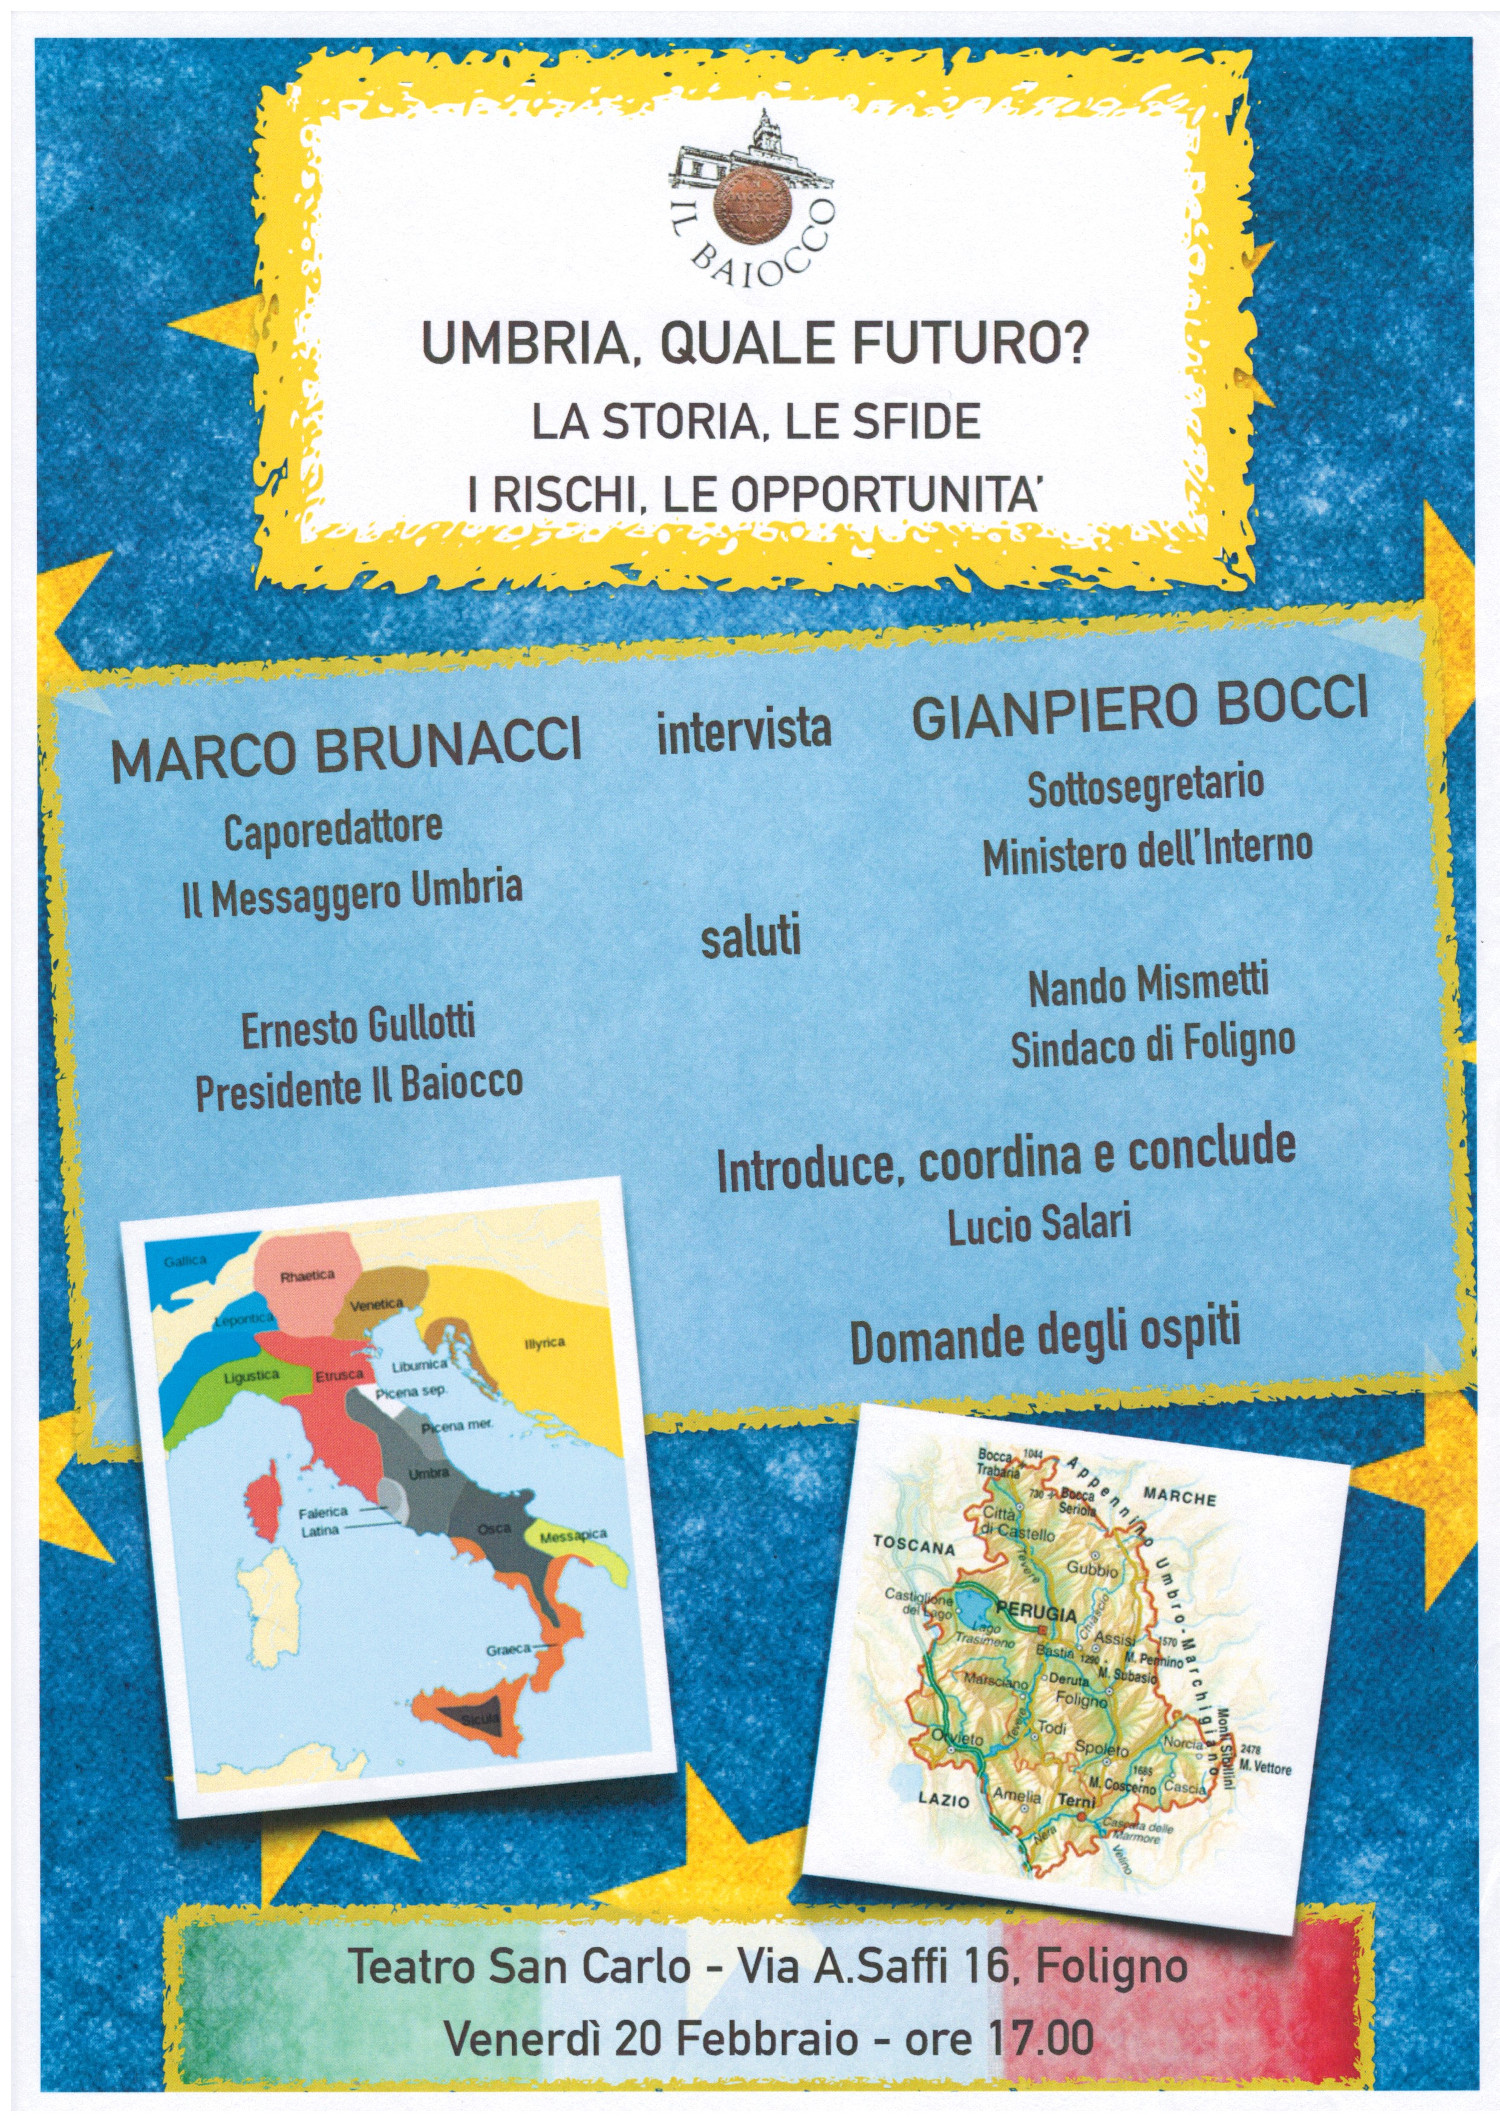 Evento 11 - 20 02 2015 - Umbria, quale futuro?